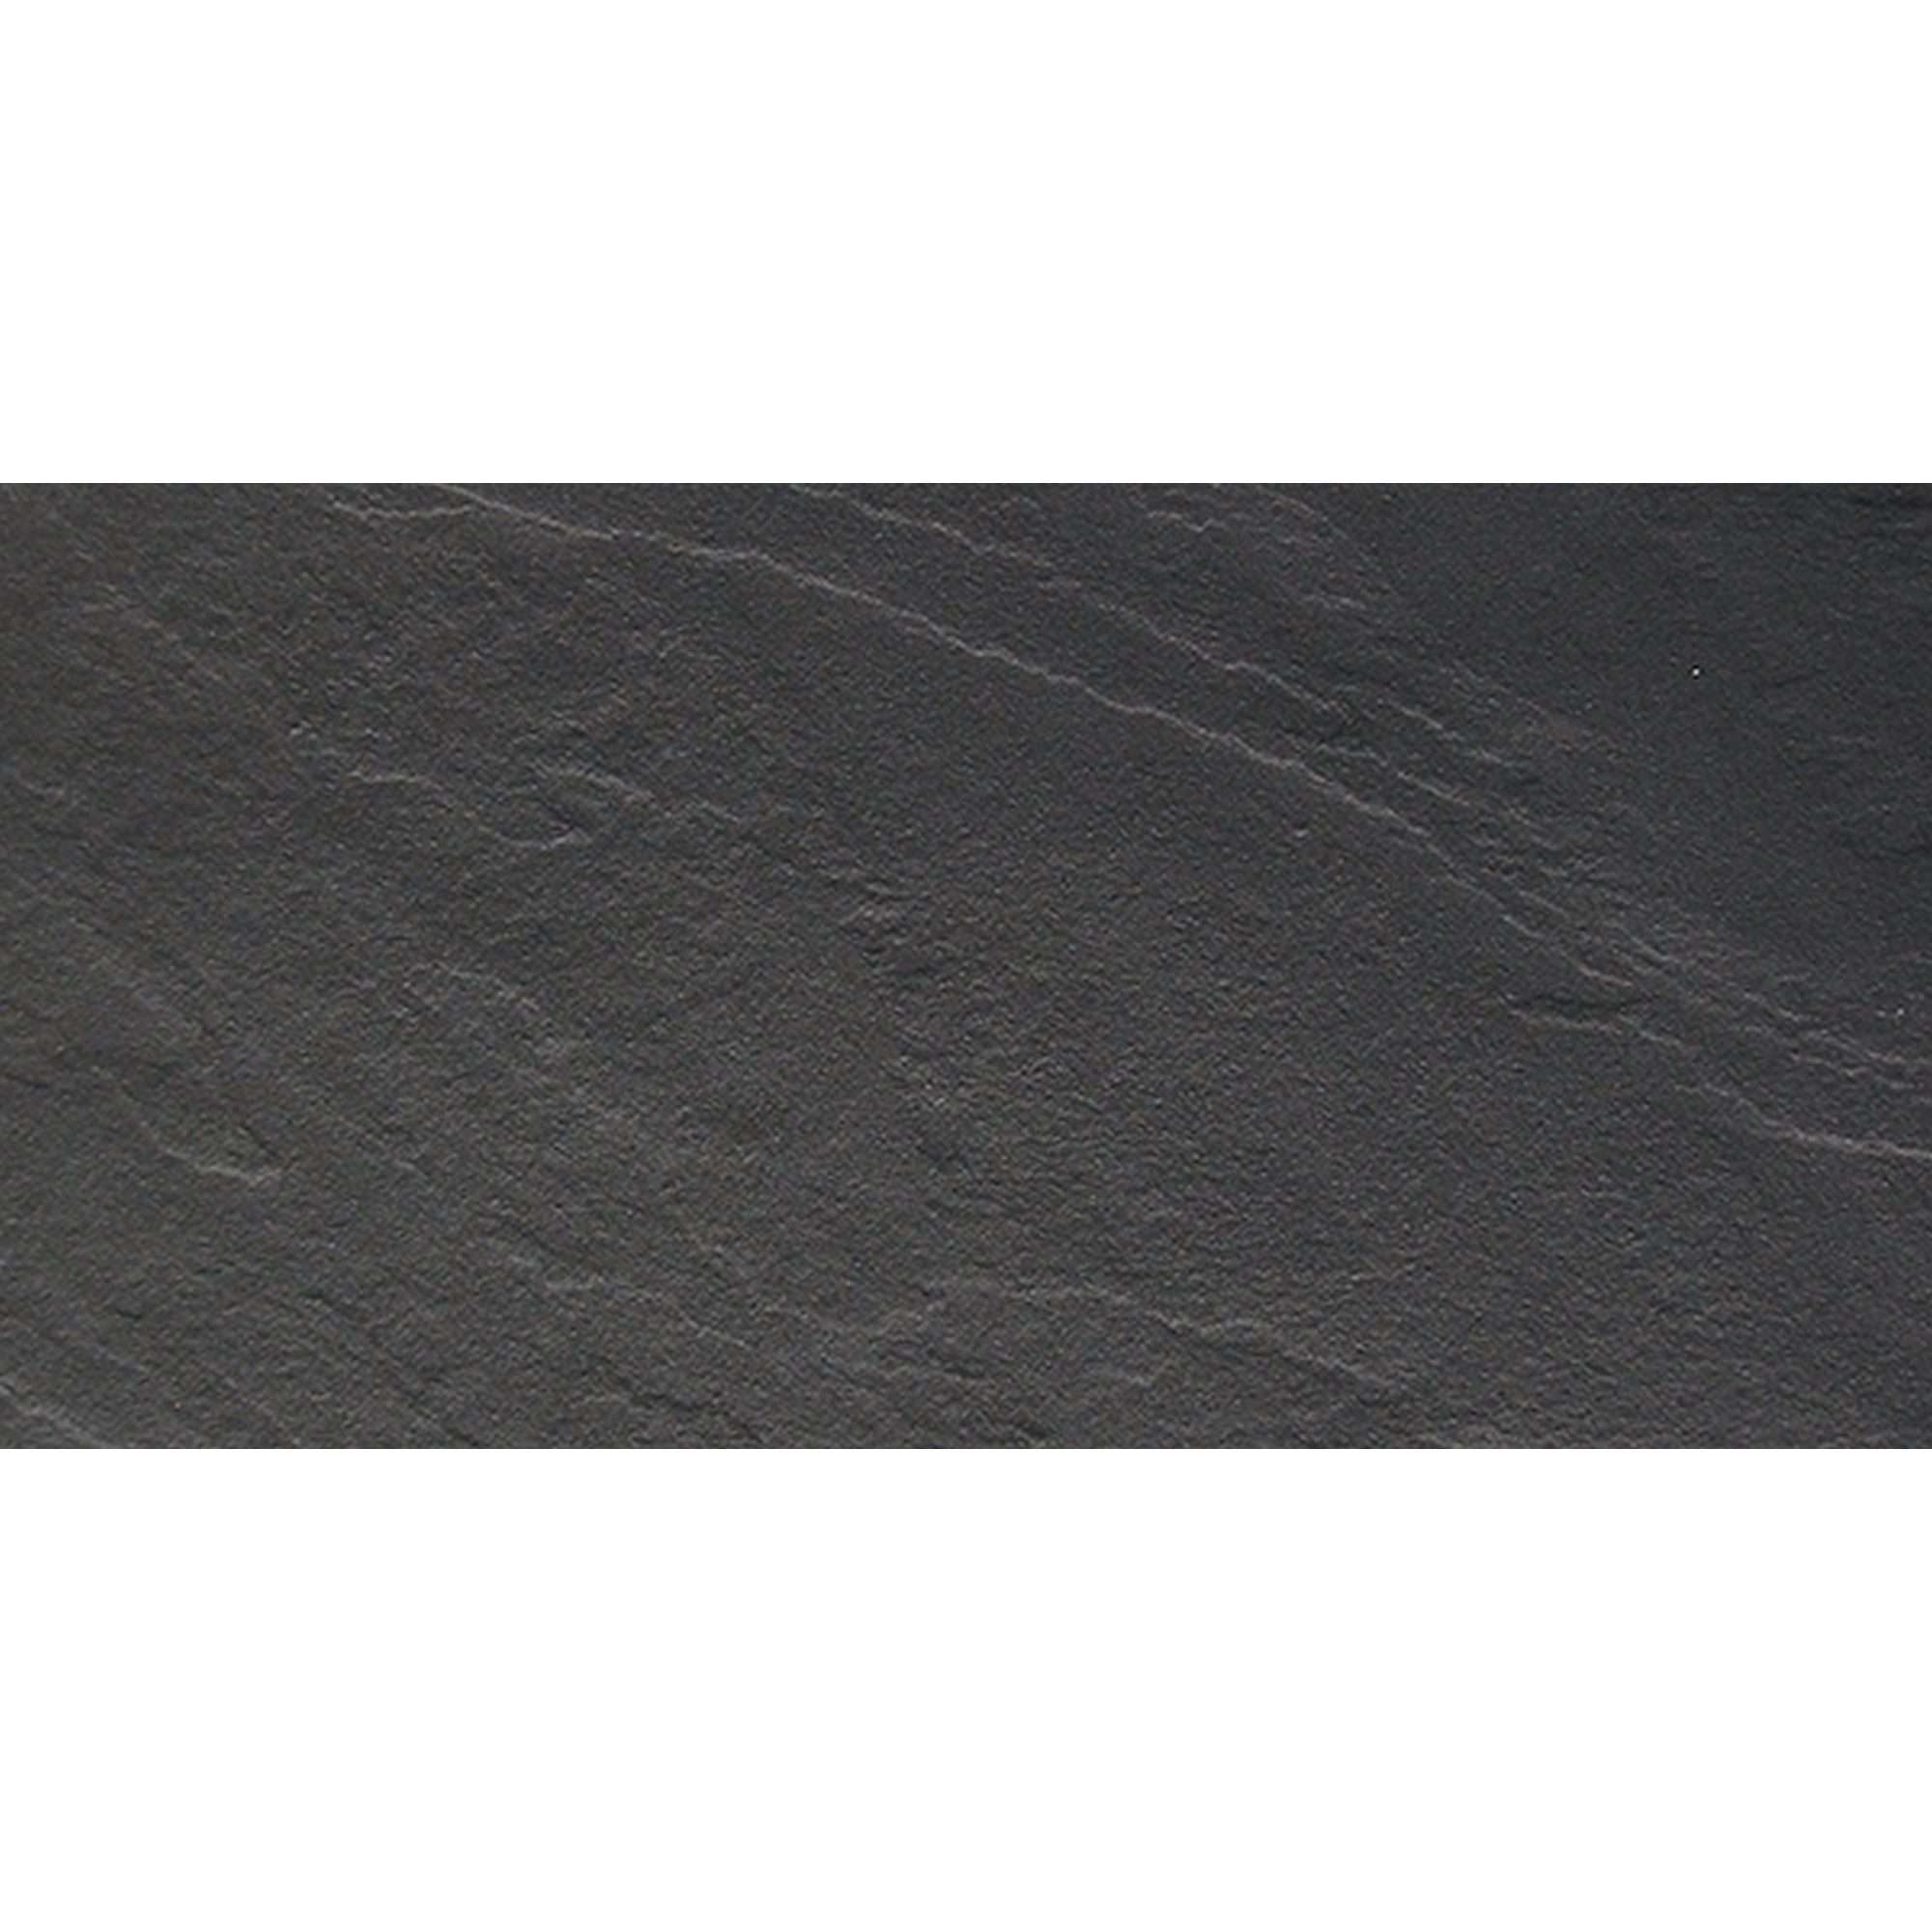 Bodenfliese 'Basalto' Feinsteinzeug schwarz 30,2 x 60,4 cm + product picture